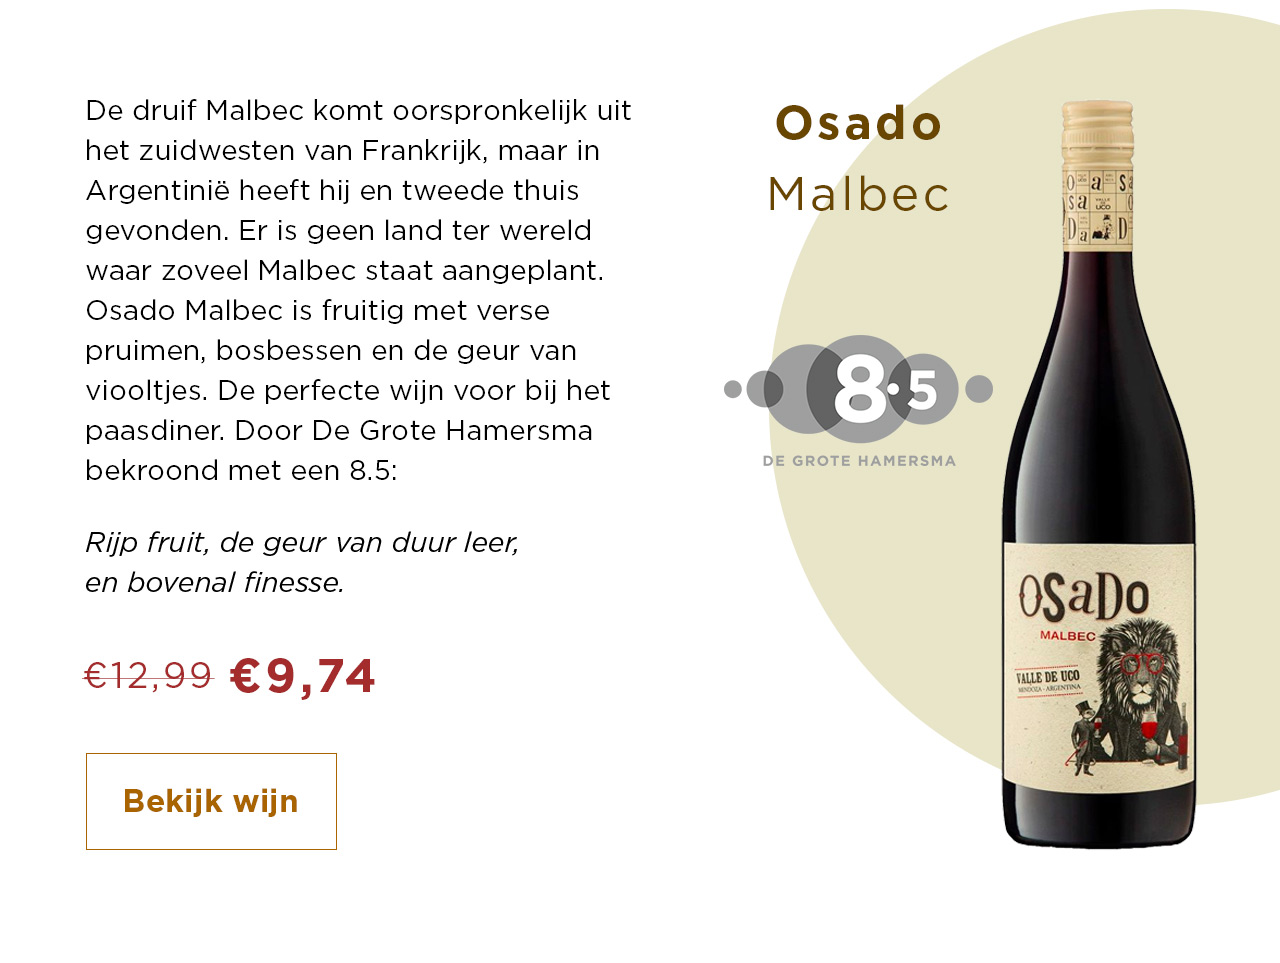 Osado Malbec van 12.99 voor 9.74 | Bekijk wijn